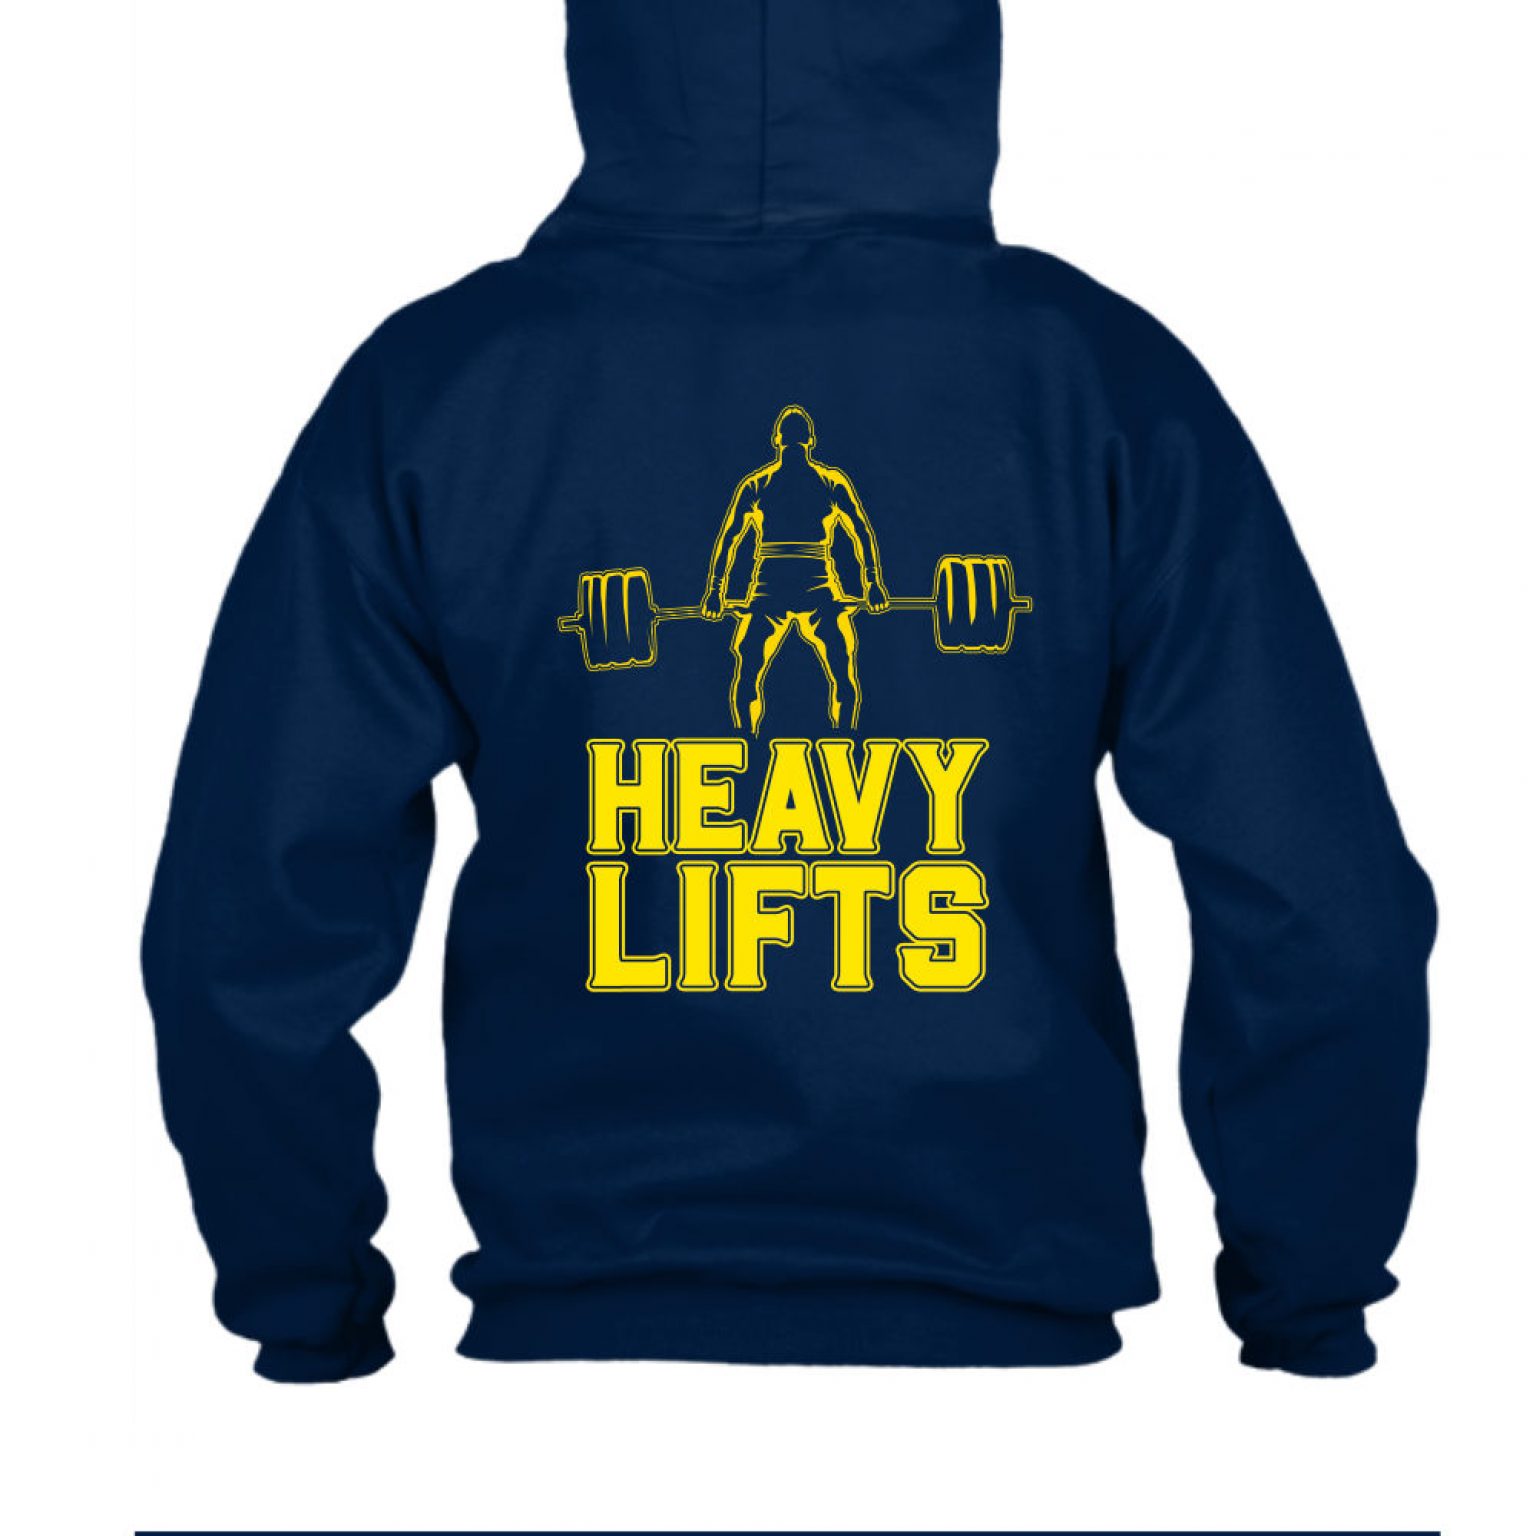 heavylifts hoodie herren navy back